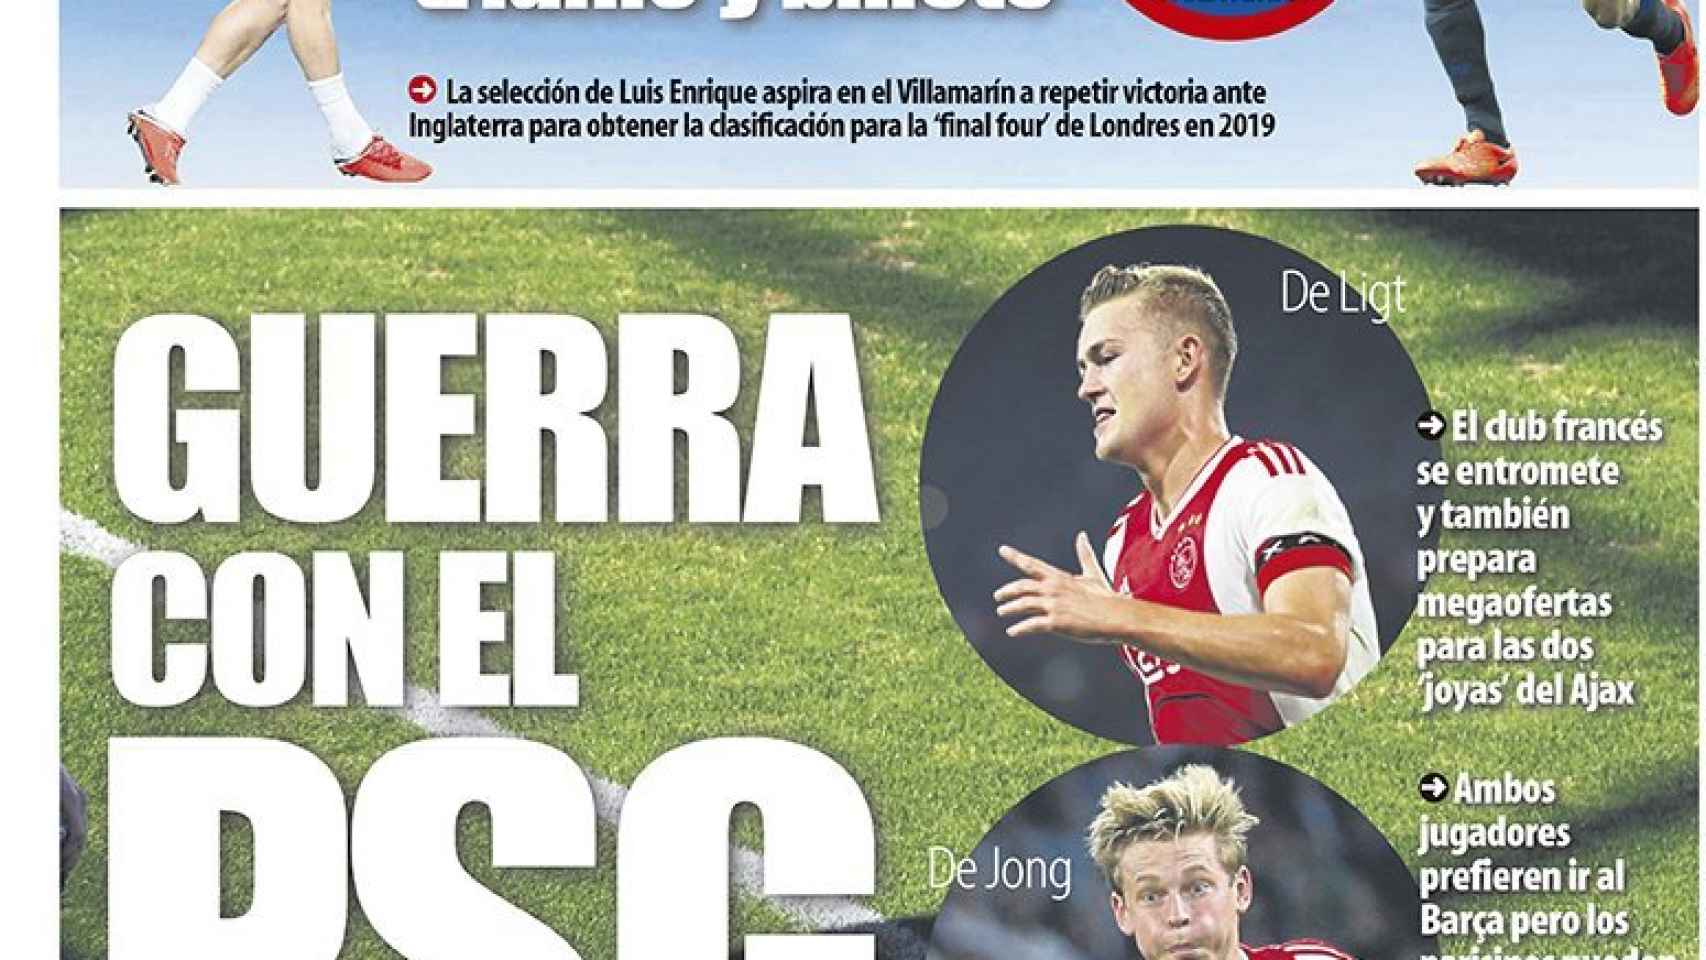 La portada del diario Mundo Deportivo (15/10/2018)